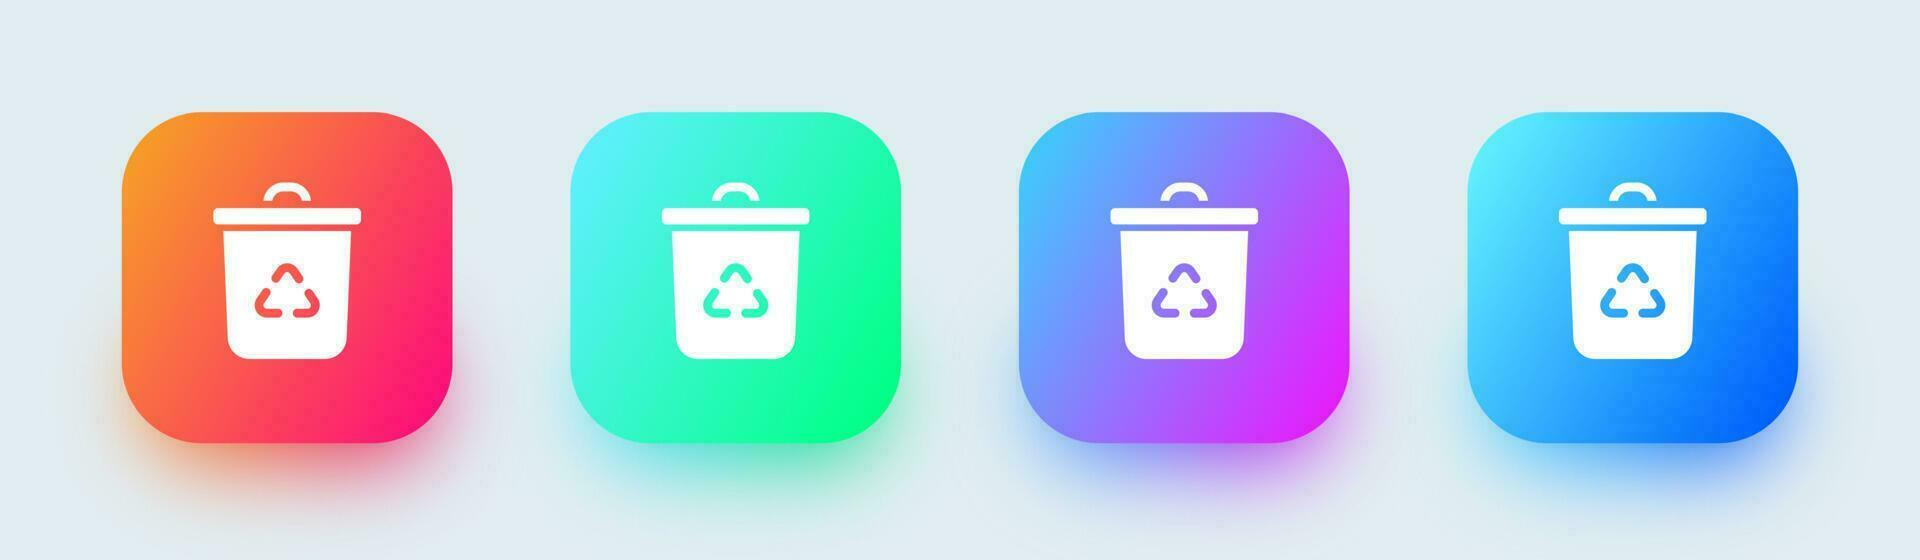 reciclaje sólido icono en cuadrado degradado colores. ecología señales vector ilustración.